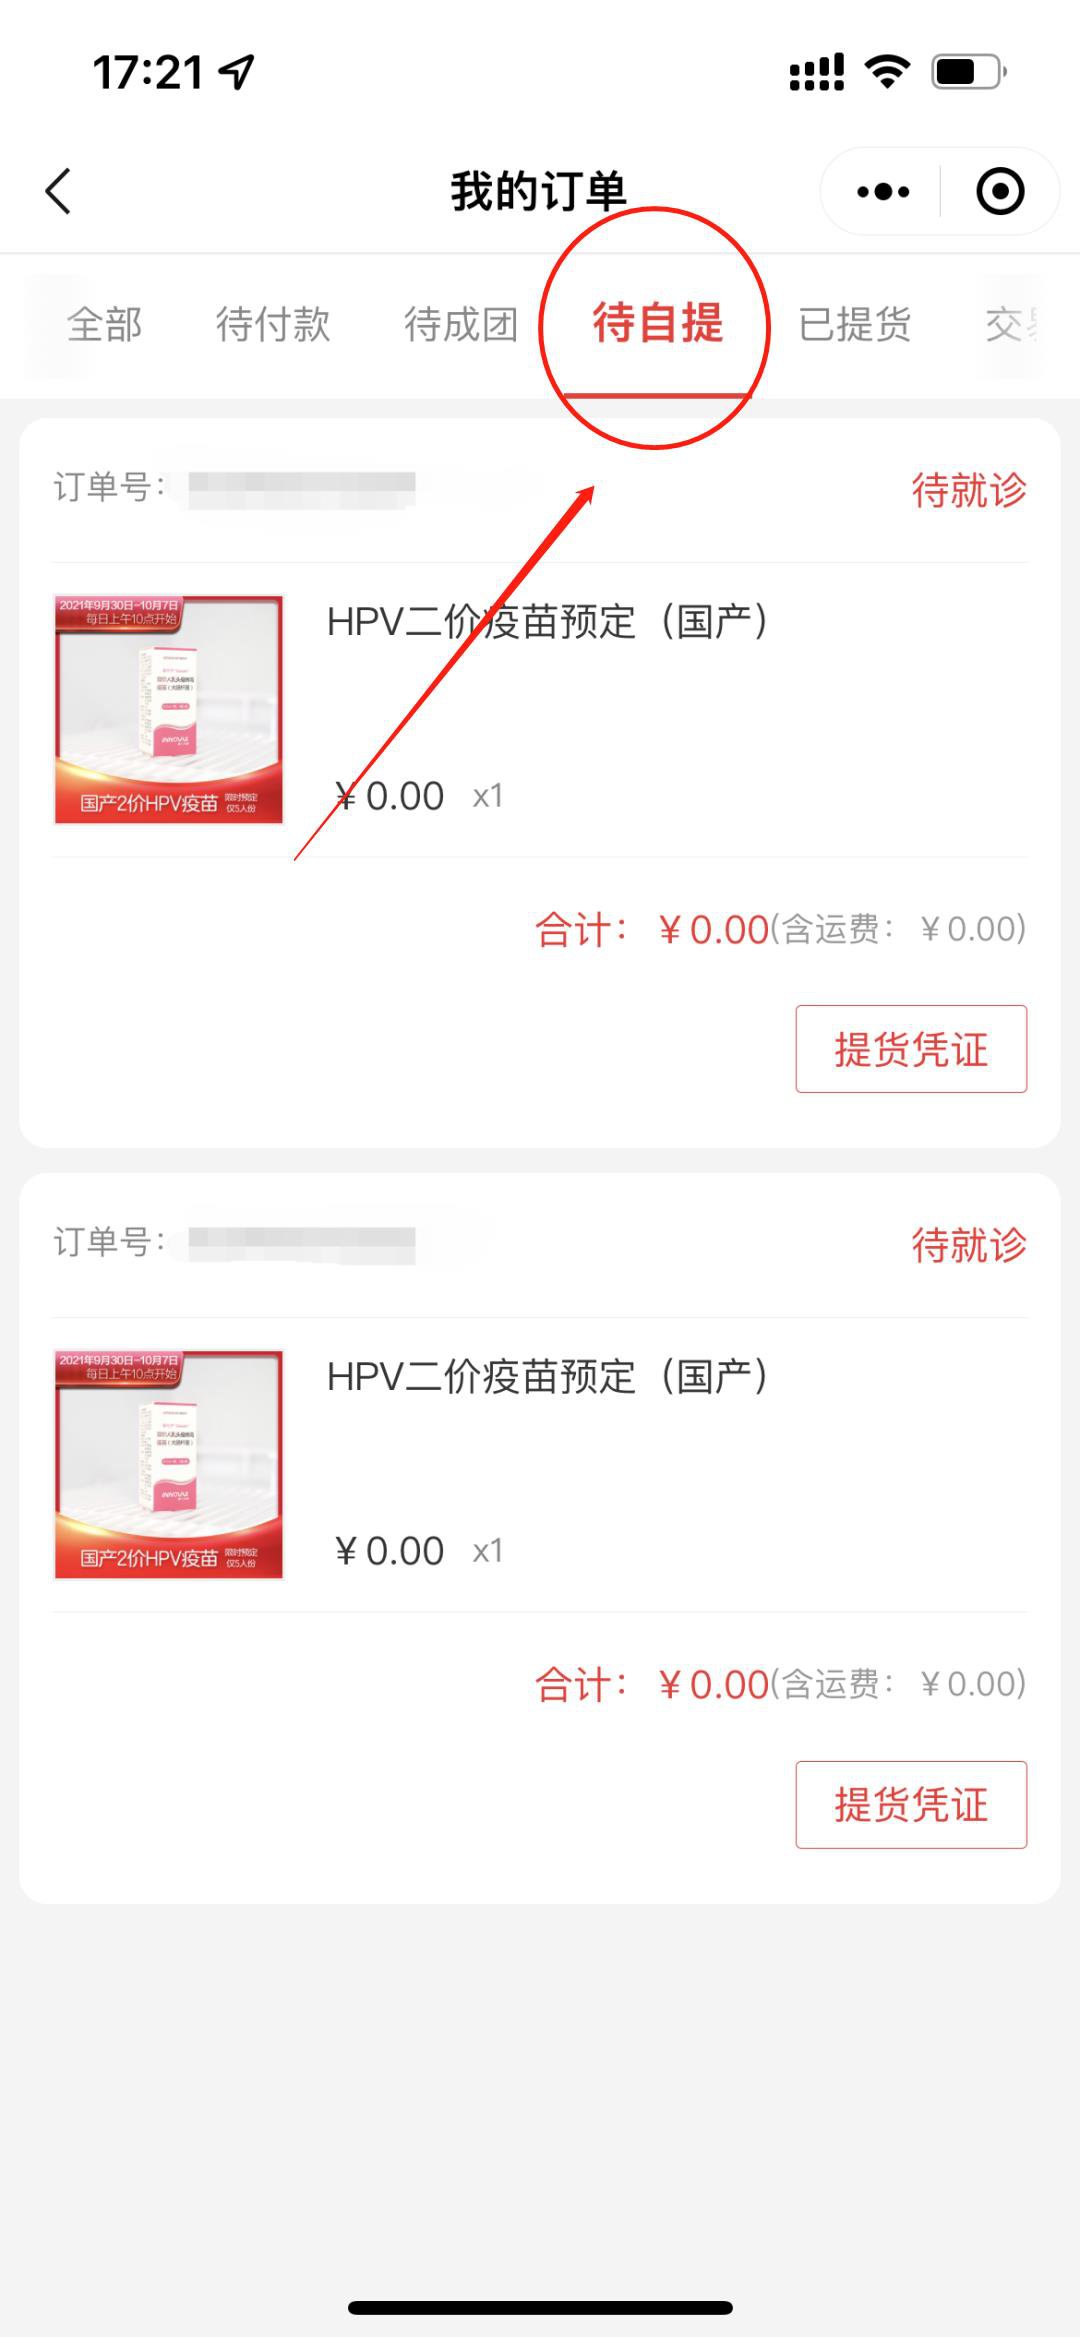 重庆五洲妇儿医院HPV疫苗预约方式